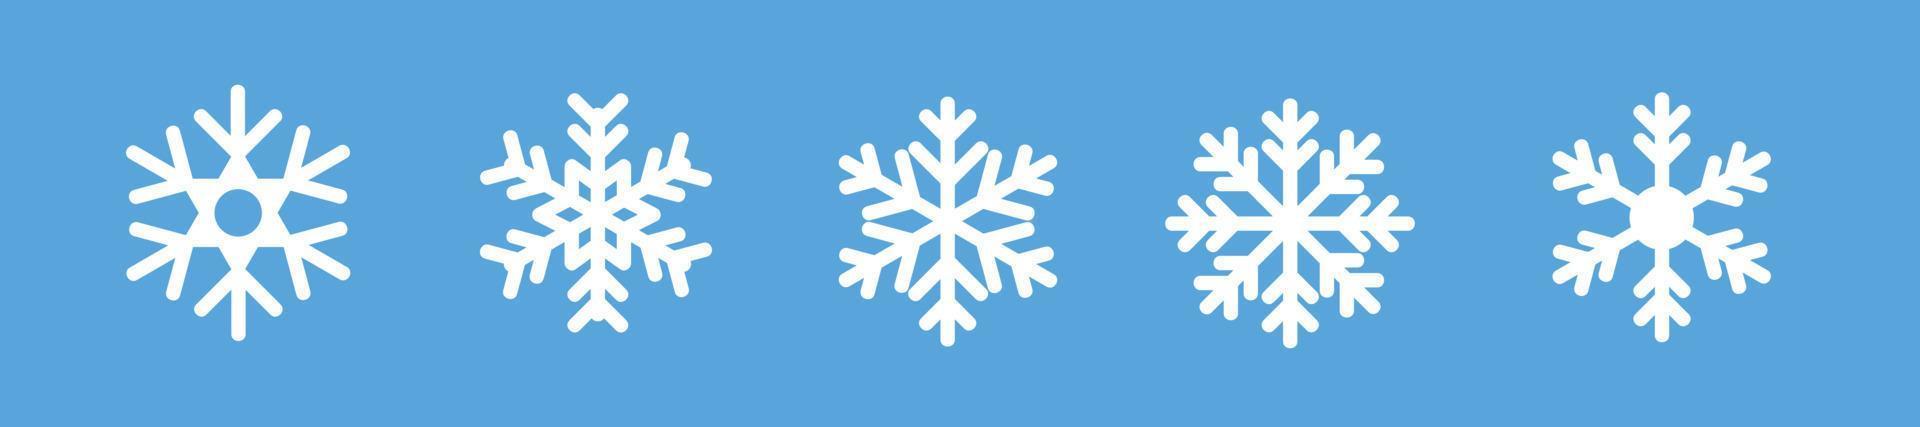 vecteur d'icônes de flocons de neige blancs. symboles isolés de flocon de neige d'hiver blanc sur fond bleu. signe de flocon de neige de Noël silhouette. illustration vectorielle.